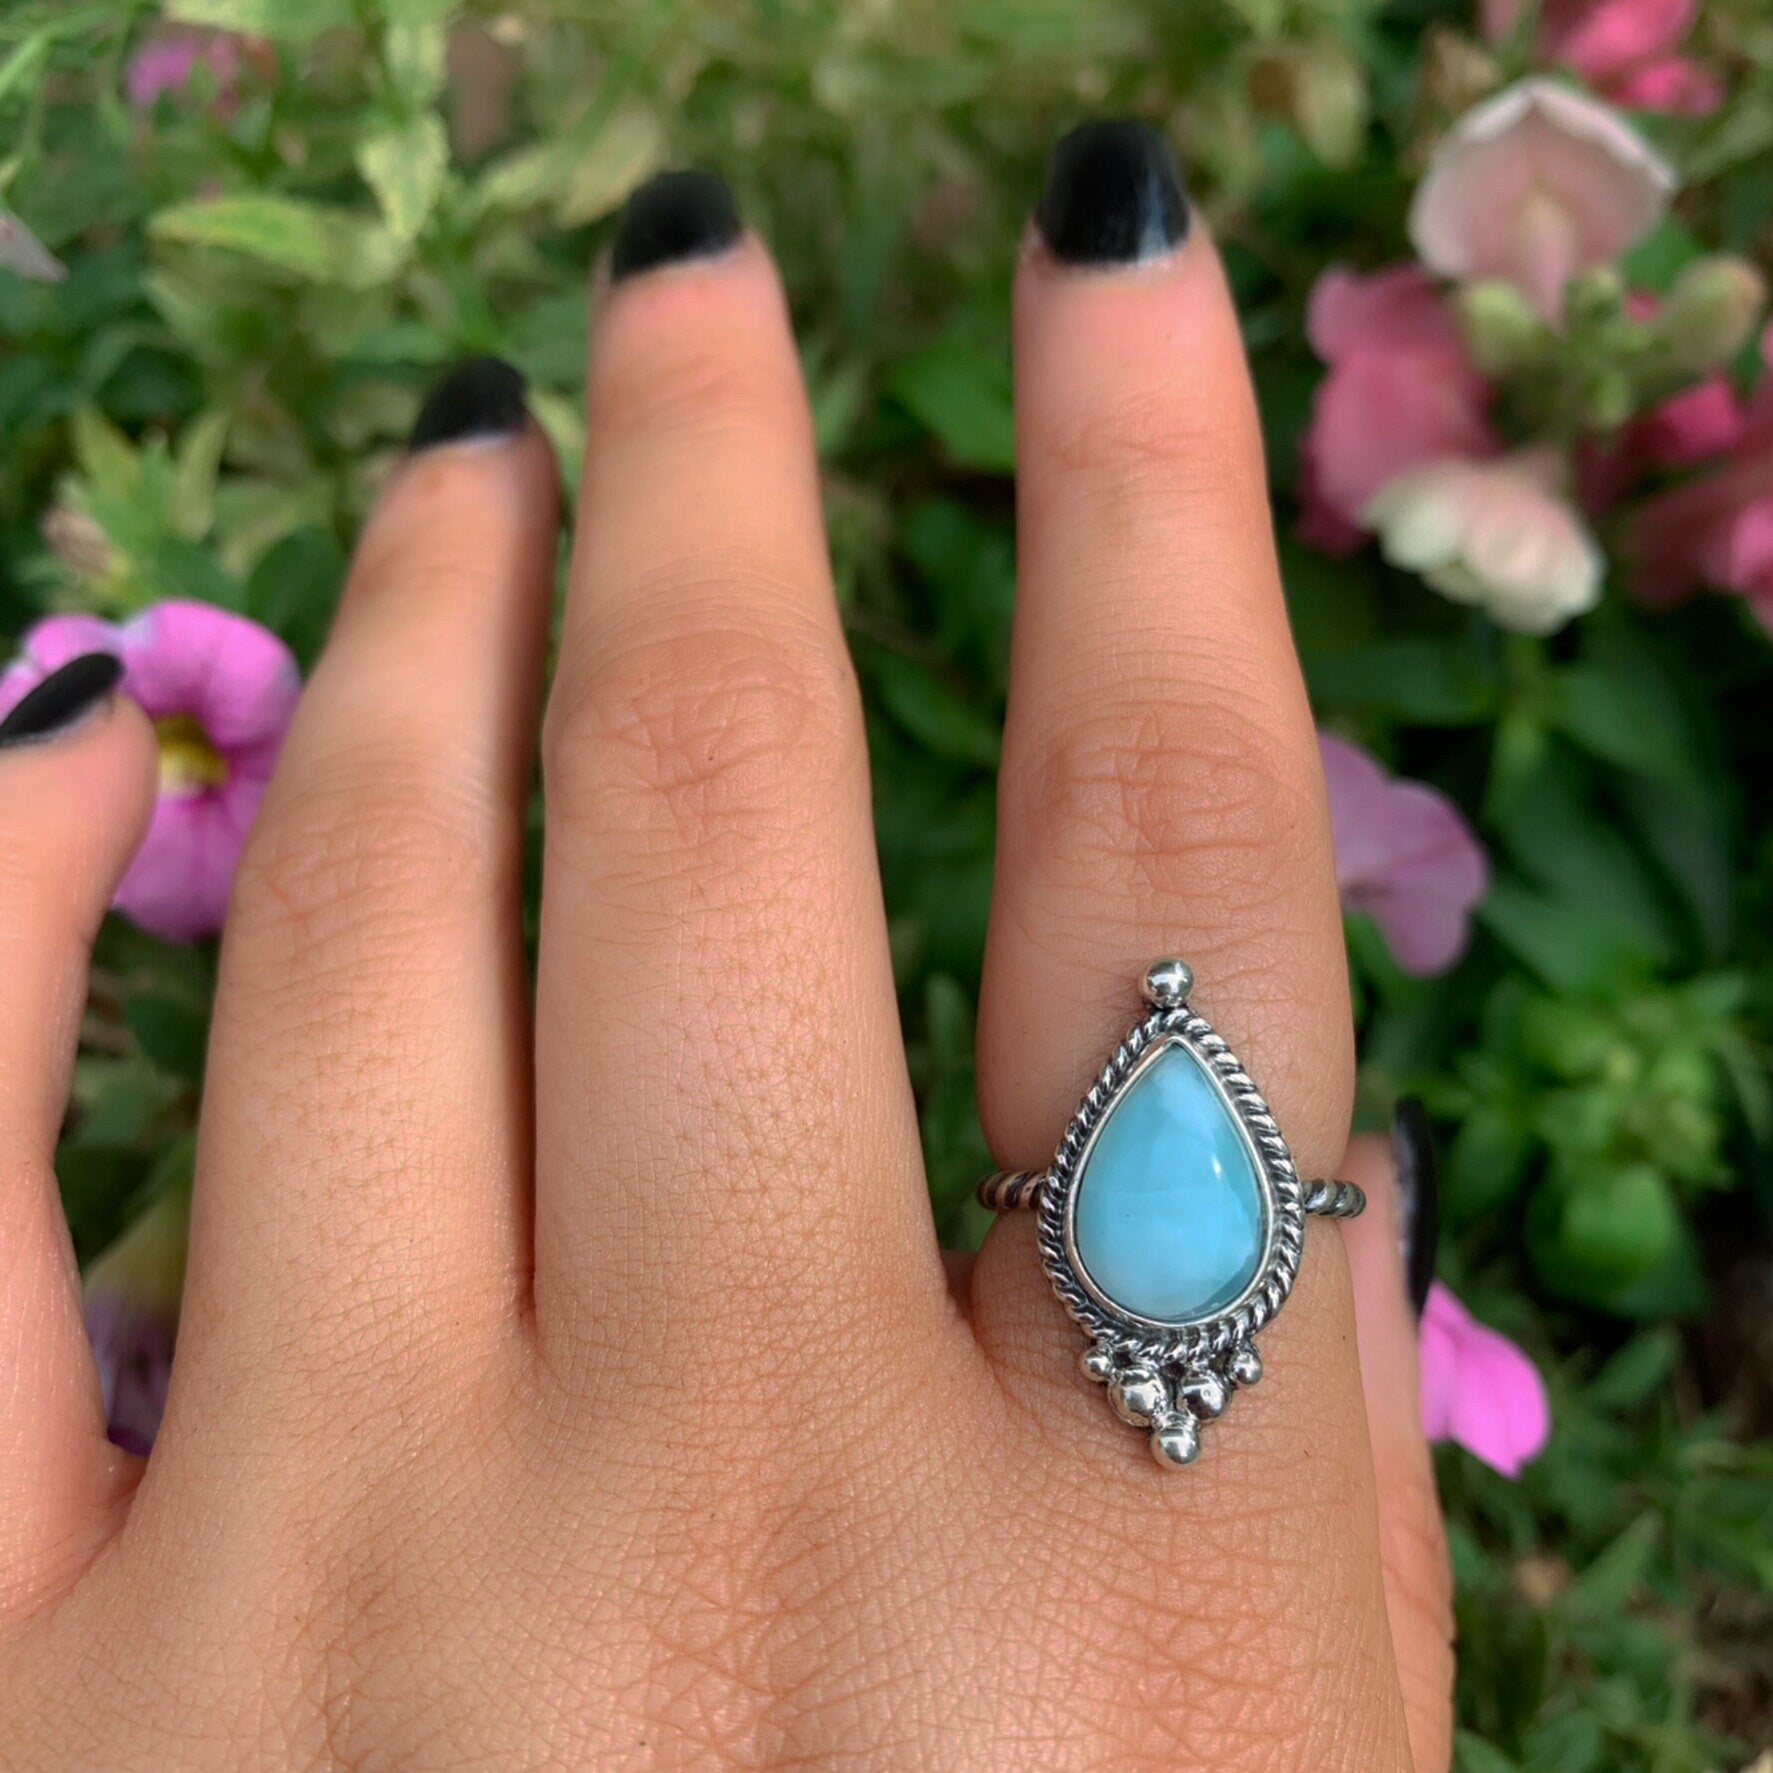 Larimar Ring - Size 6 - Sterling Silver - Blue Larimar Ring - Teardrop Larimar Ring - Larimar Jewellery - Handcrafted Larimar Statement Ring